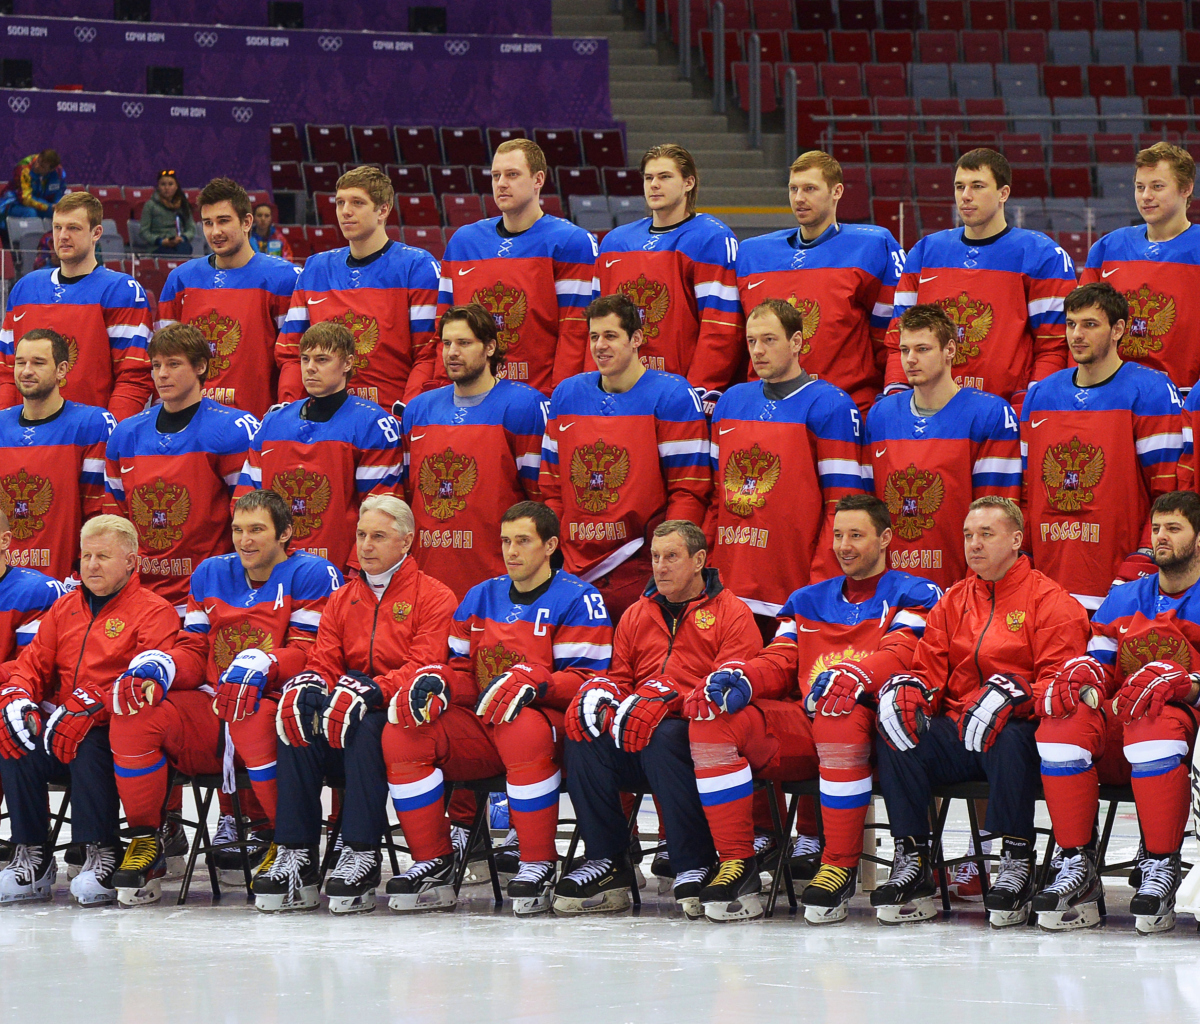 Russian Hockey Team Sochi 2014 wallpaper 1200x1024